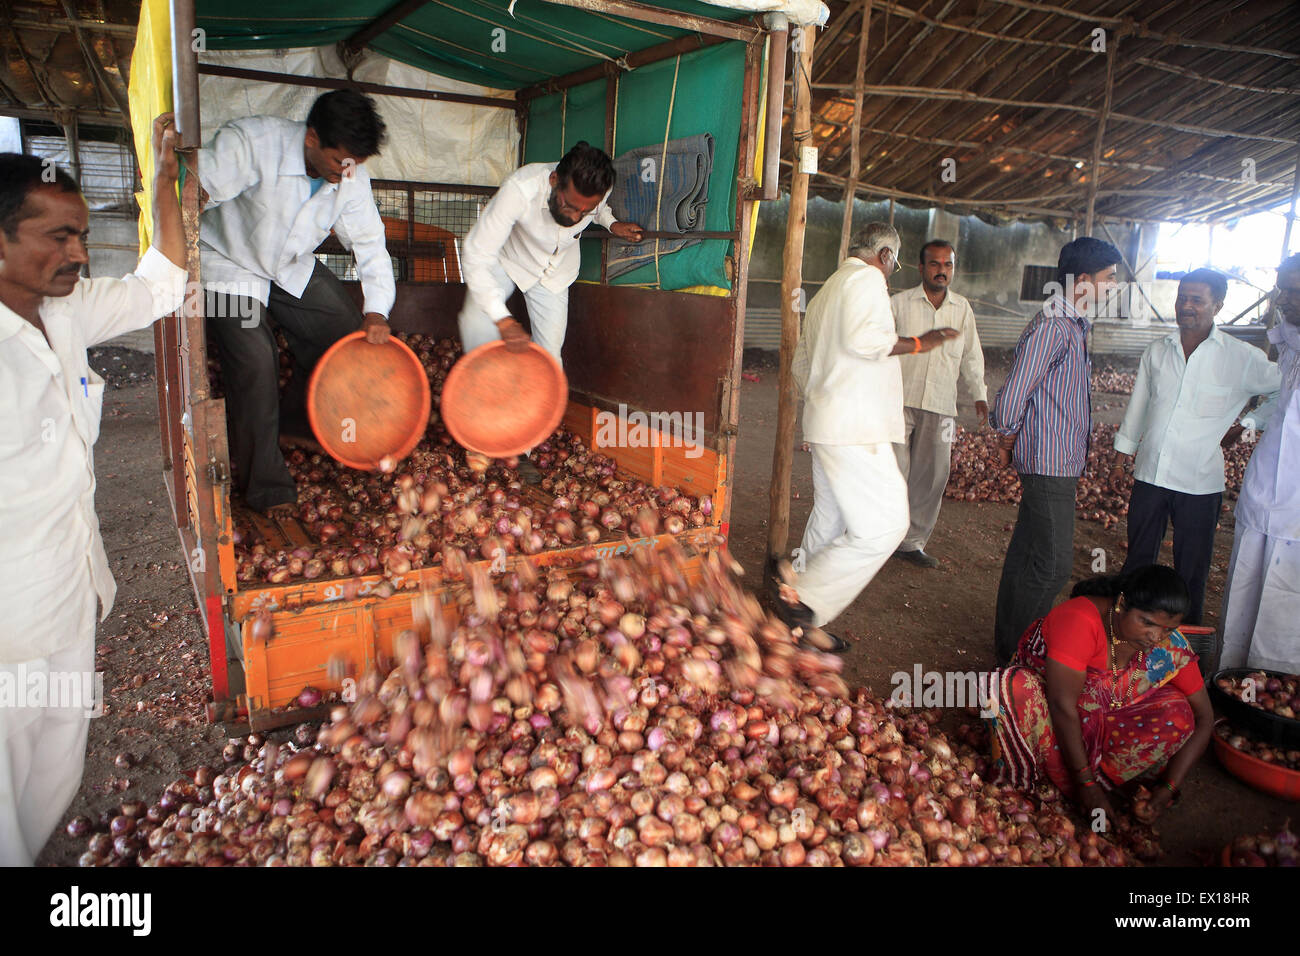 Maharashtra, Indien. 26. September 2013. 26 Sept. 2013: Lasalgaon, Indien:. Ein Zwiebel-Händler entlädt das Lager in seinem Lager nach kaufte er die Zwiebeln bei der Auktion am Lasalgaon-Zwiebel-Market.India, der weltweit größte Produzent von Milch und der zweitgrößte Produzent von Obst und Gemüse, ist auch eines der größten Lebensmittel-Verschwender in der Welt - 440 Milliarden Rupien Wert von Obst, Gemüse und Getreide jedes Jahr verschwenden laut Emerson Climate Technologies India , Teil von Emerson, einen US-amerikanischen Fertigung und Technologie-Unternehmen. Cold Storage Lösungen, die stark la Stockfoto